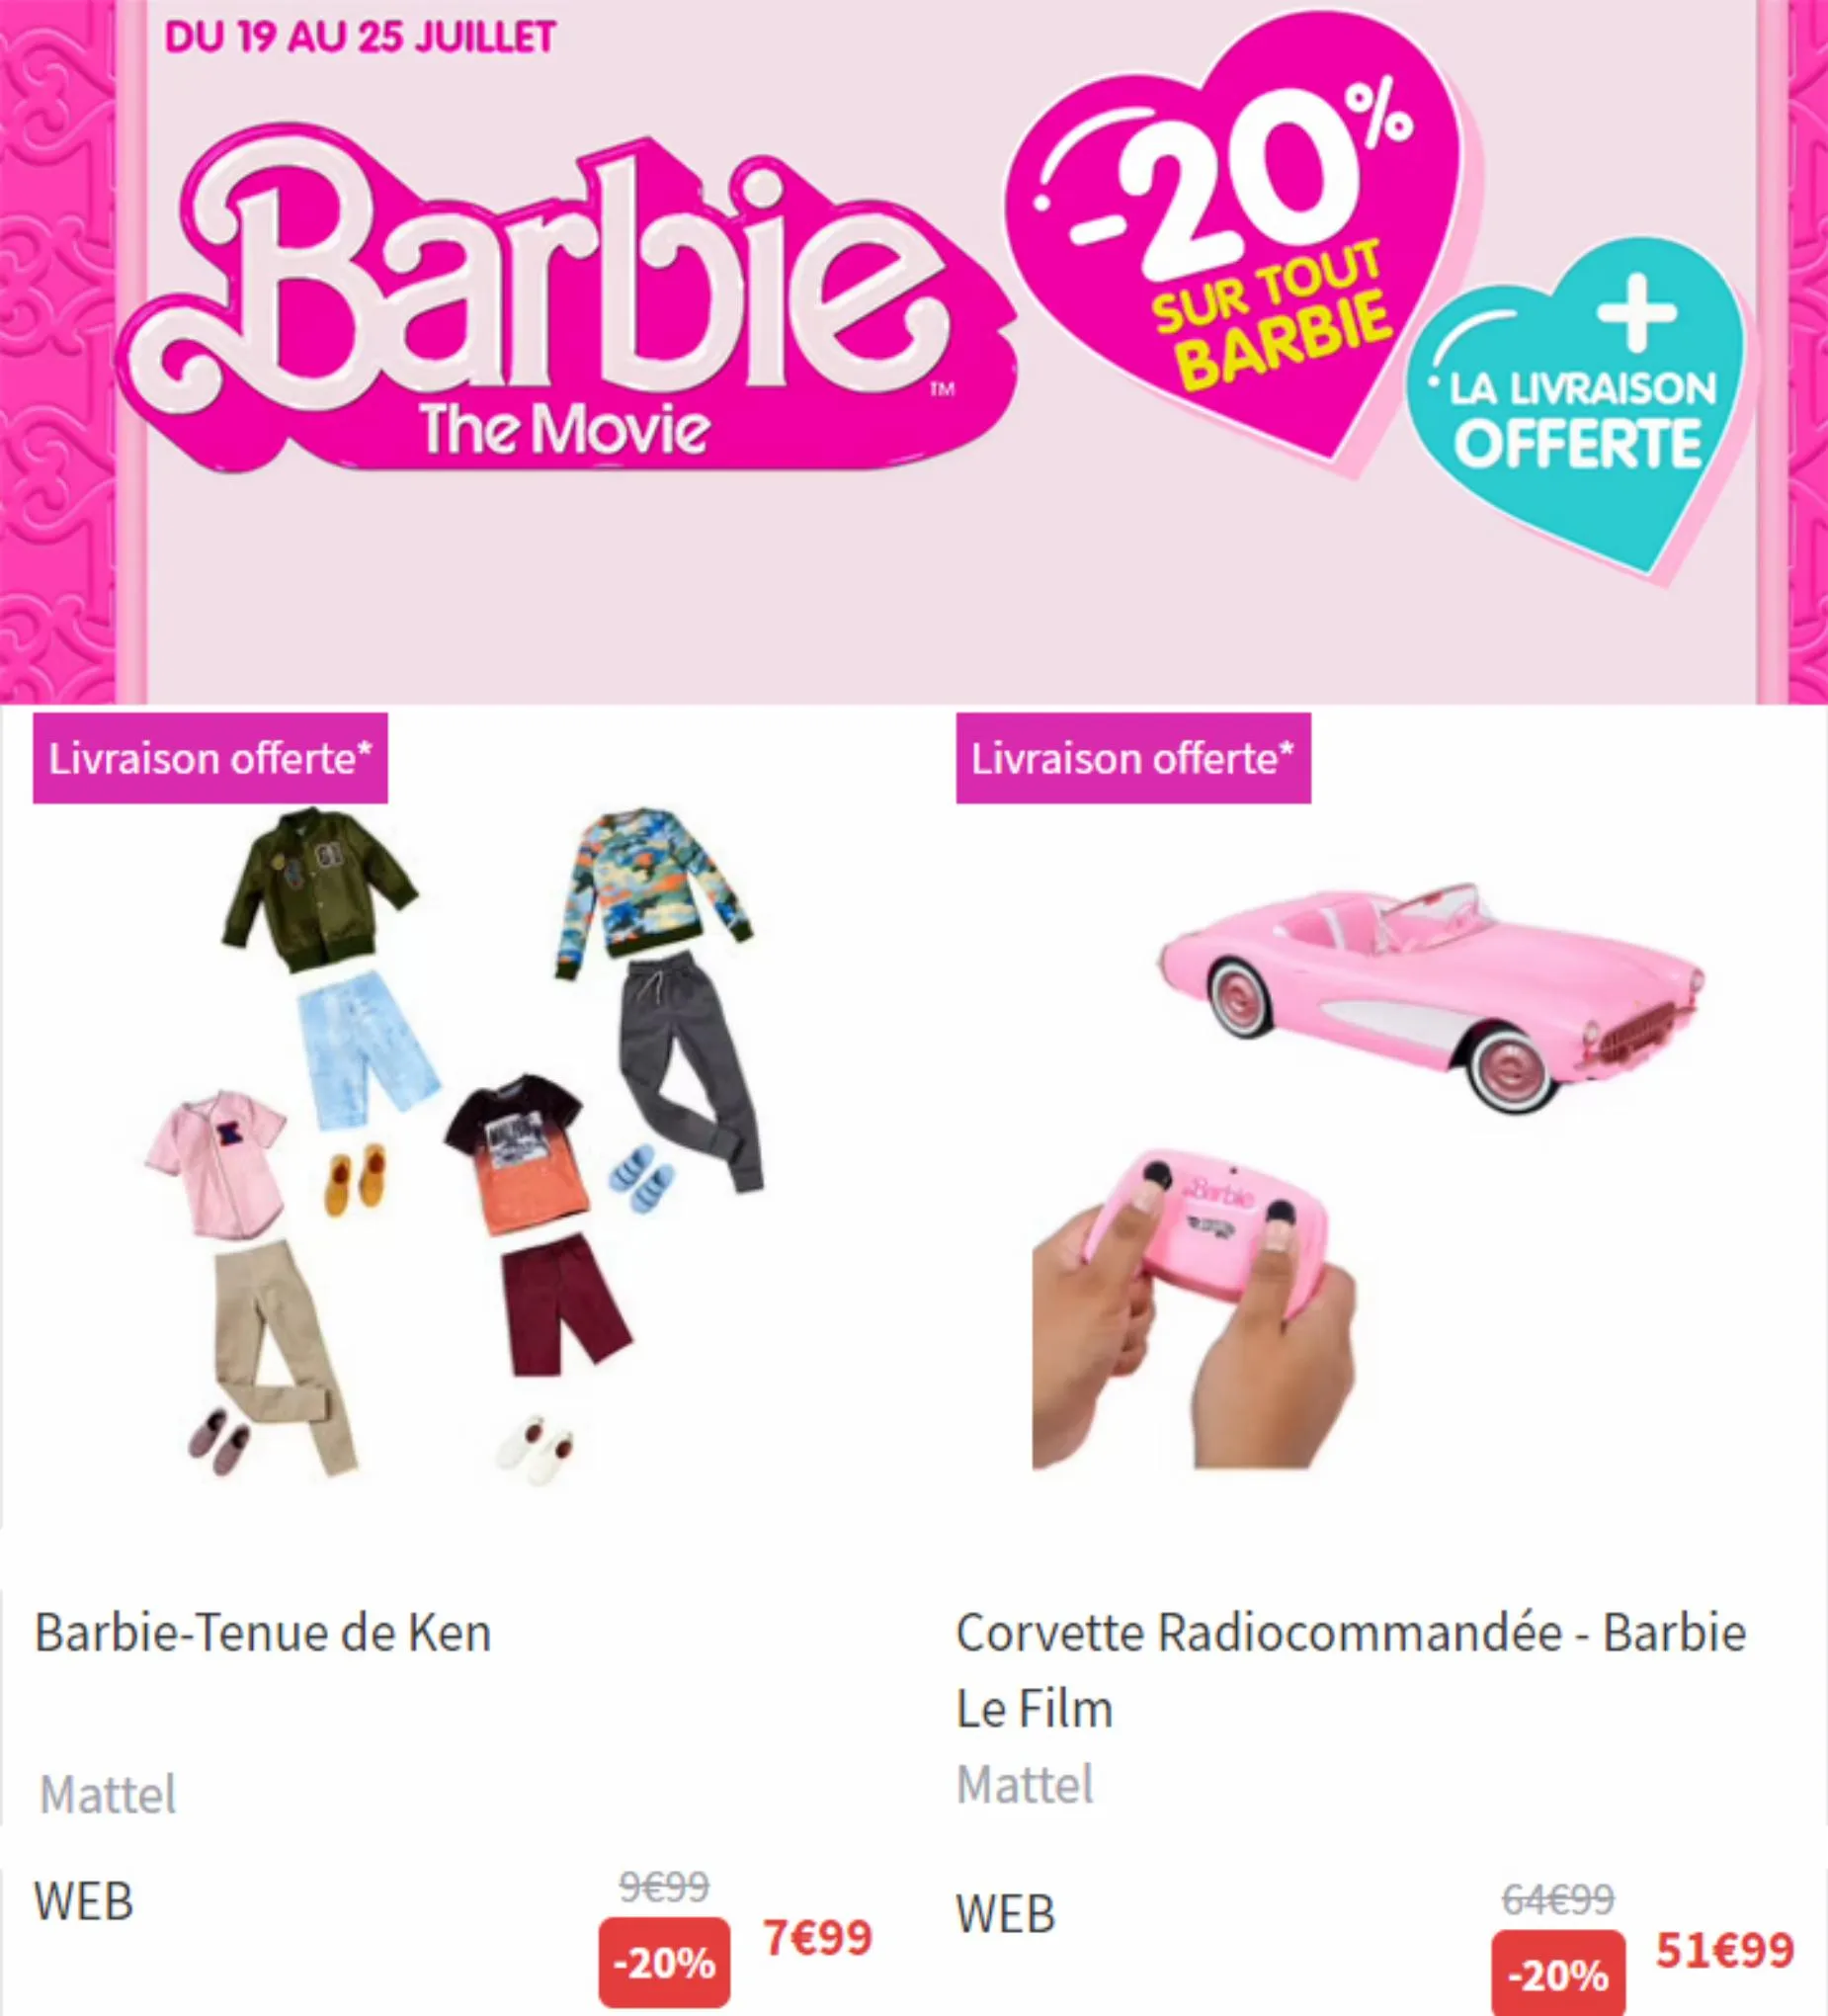 Catalogue Barbie The movie 20% de remise, page 00005